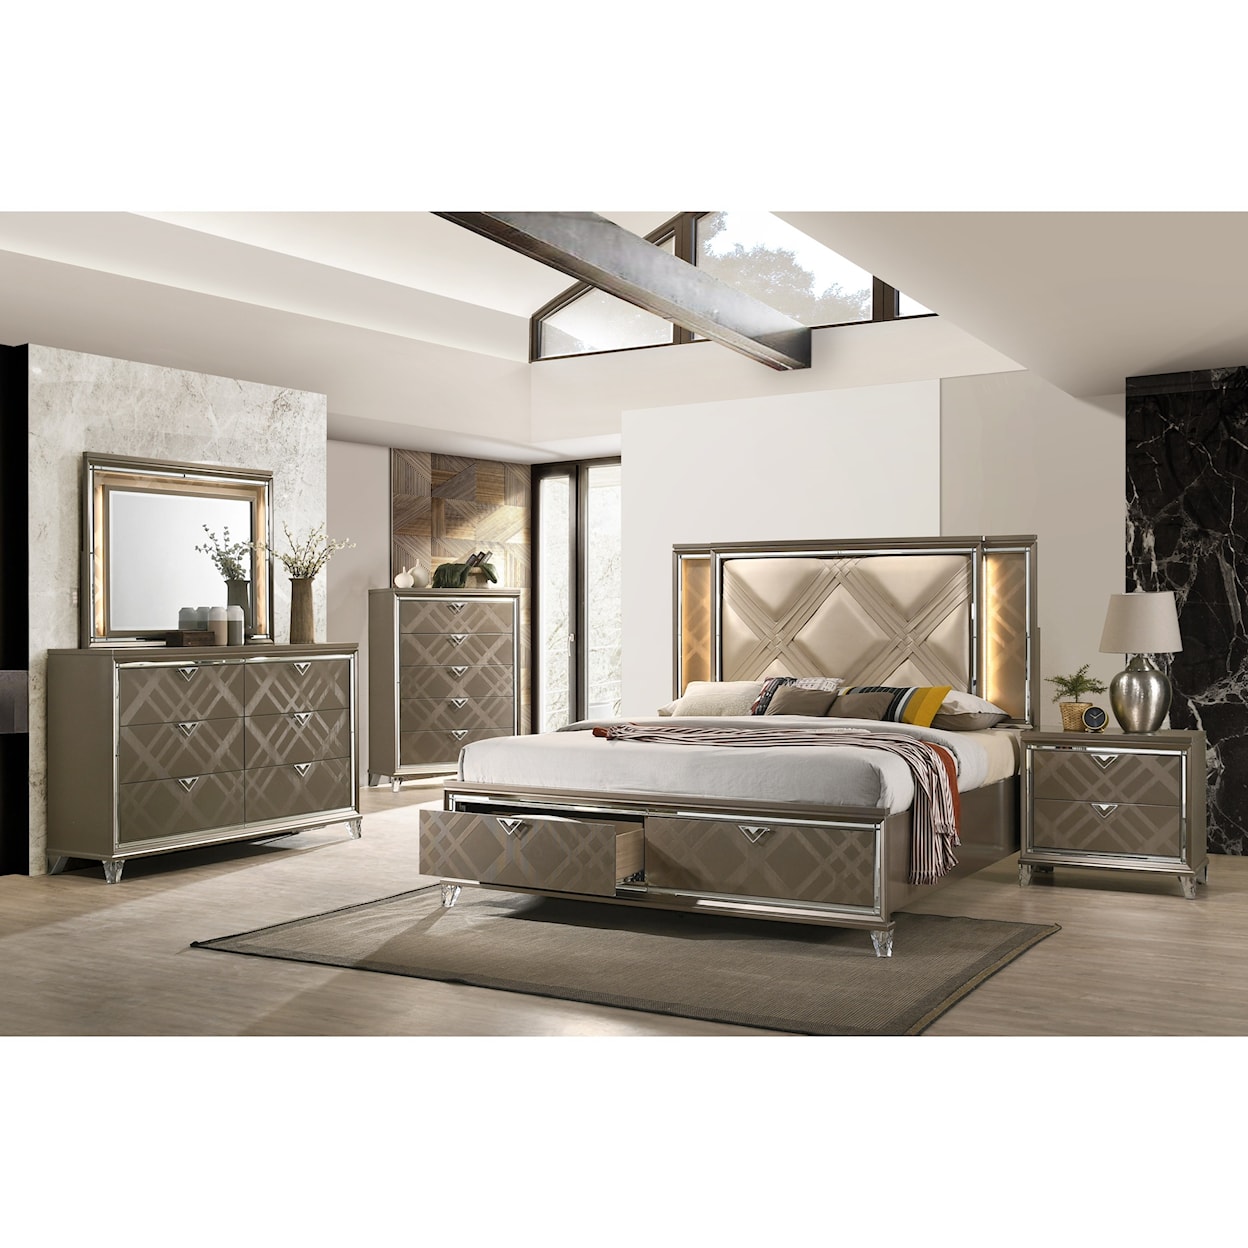 Acme Furniture Skylar Queen Bedroom Group